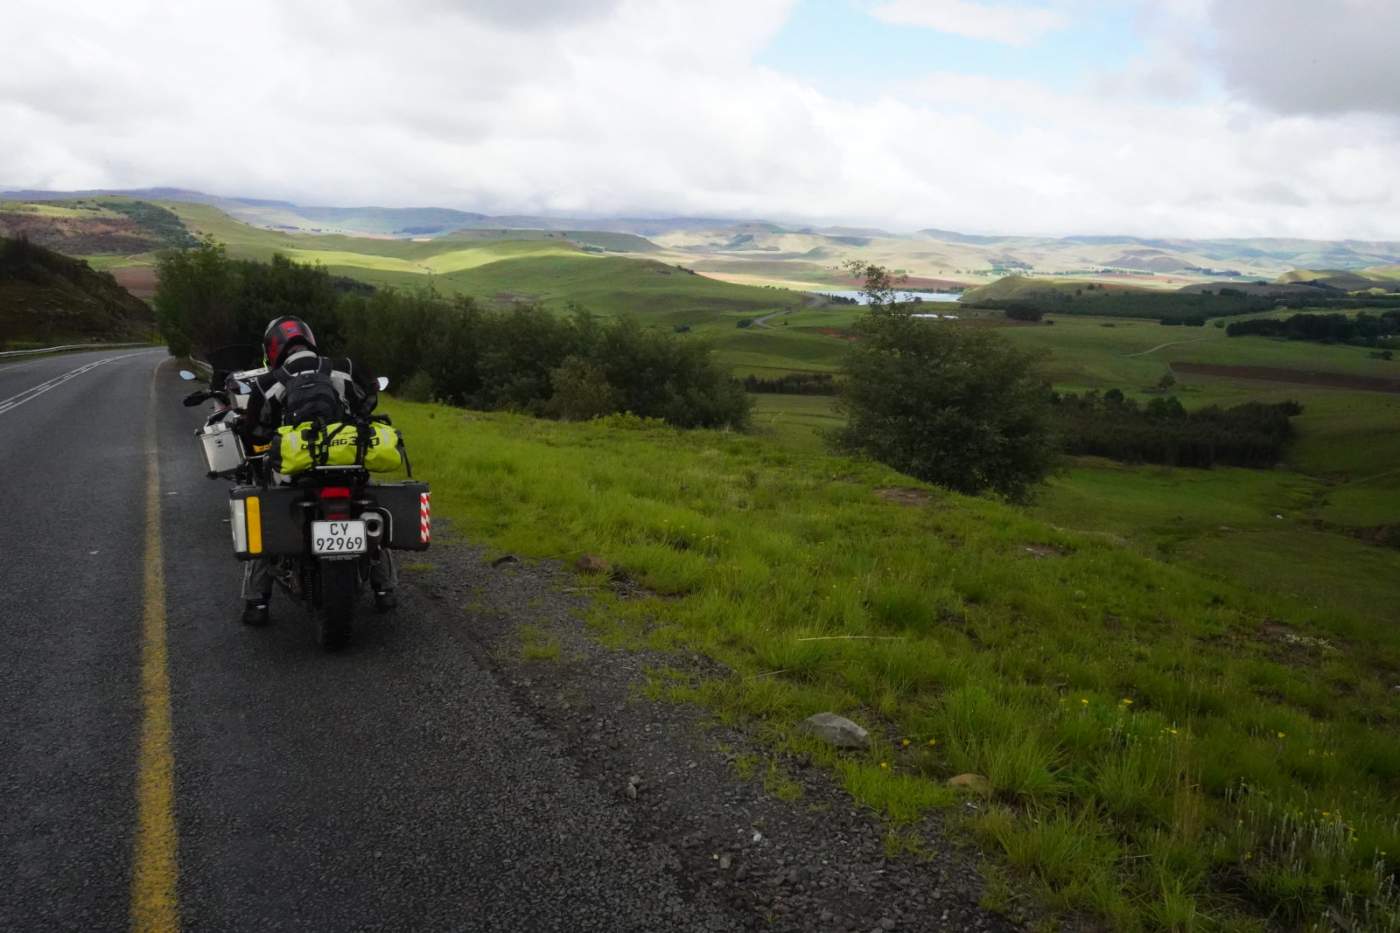 Auf der Straße geht es mit unseren BMW Mietmotorrädern auf dieser Südafrika Motorradreise von Johannesburg nach Kapstadt. Es erwarten uns schöne Panoramen in der KwaZulu Natal Region.